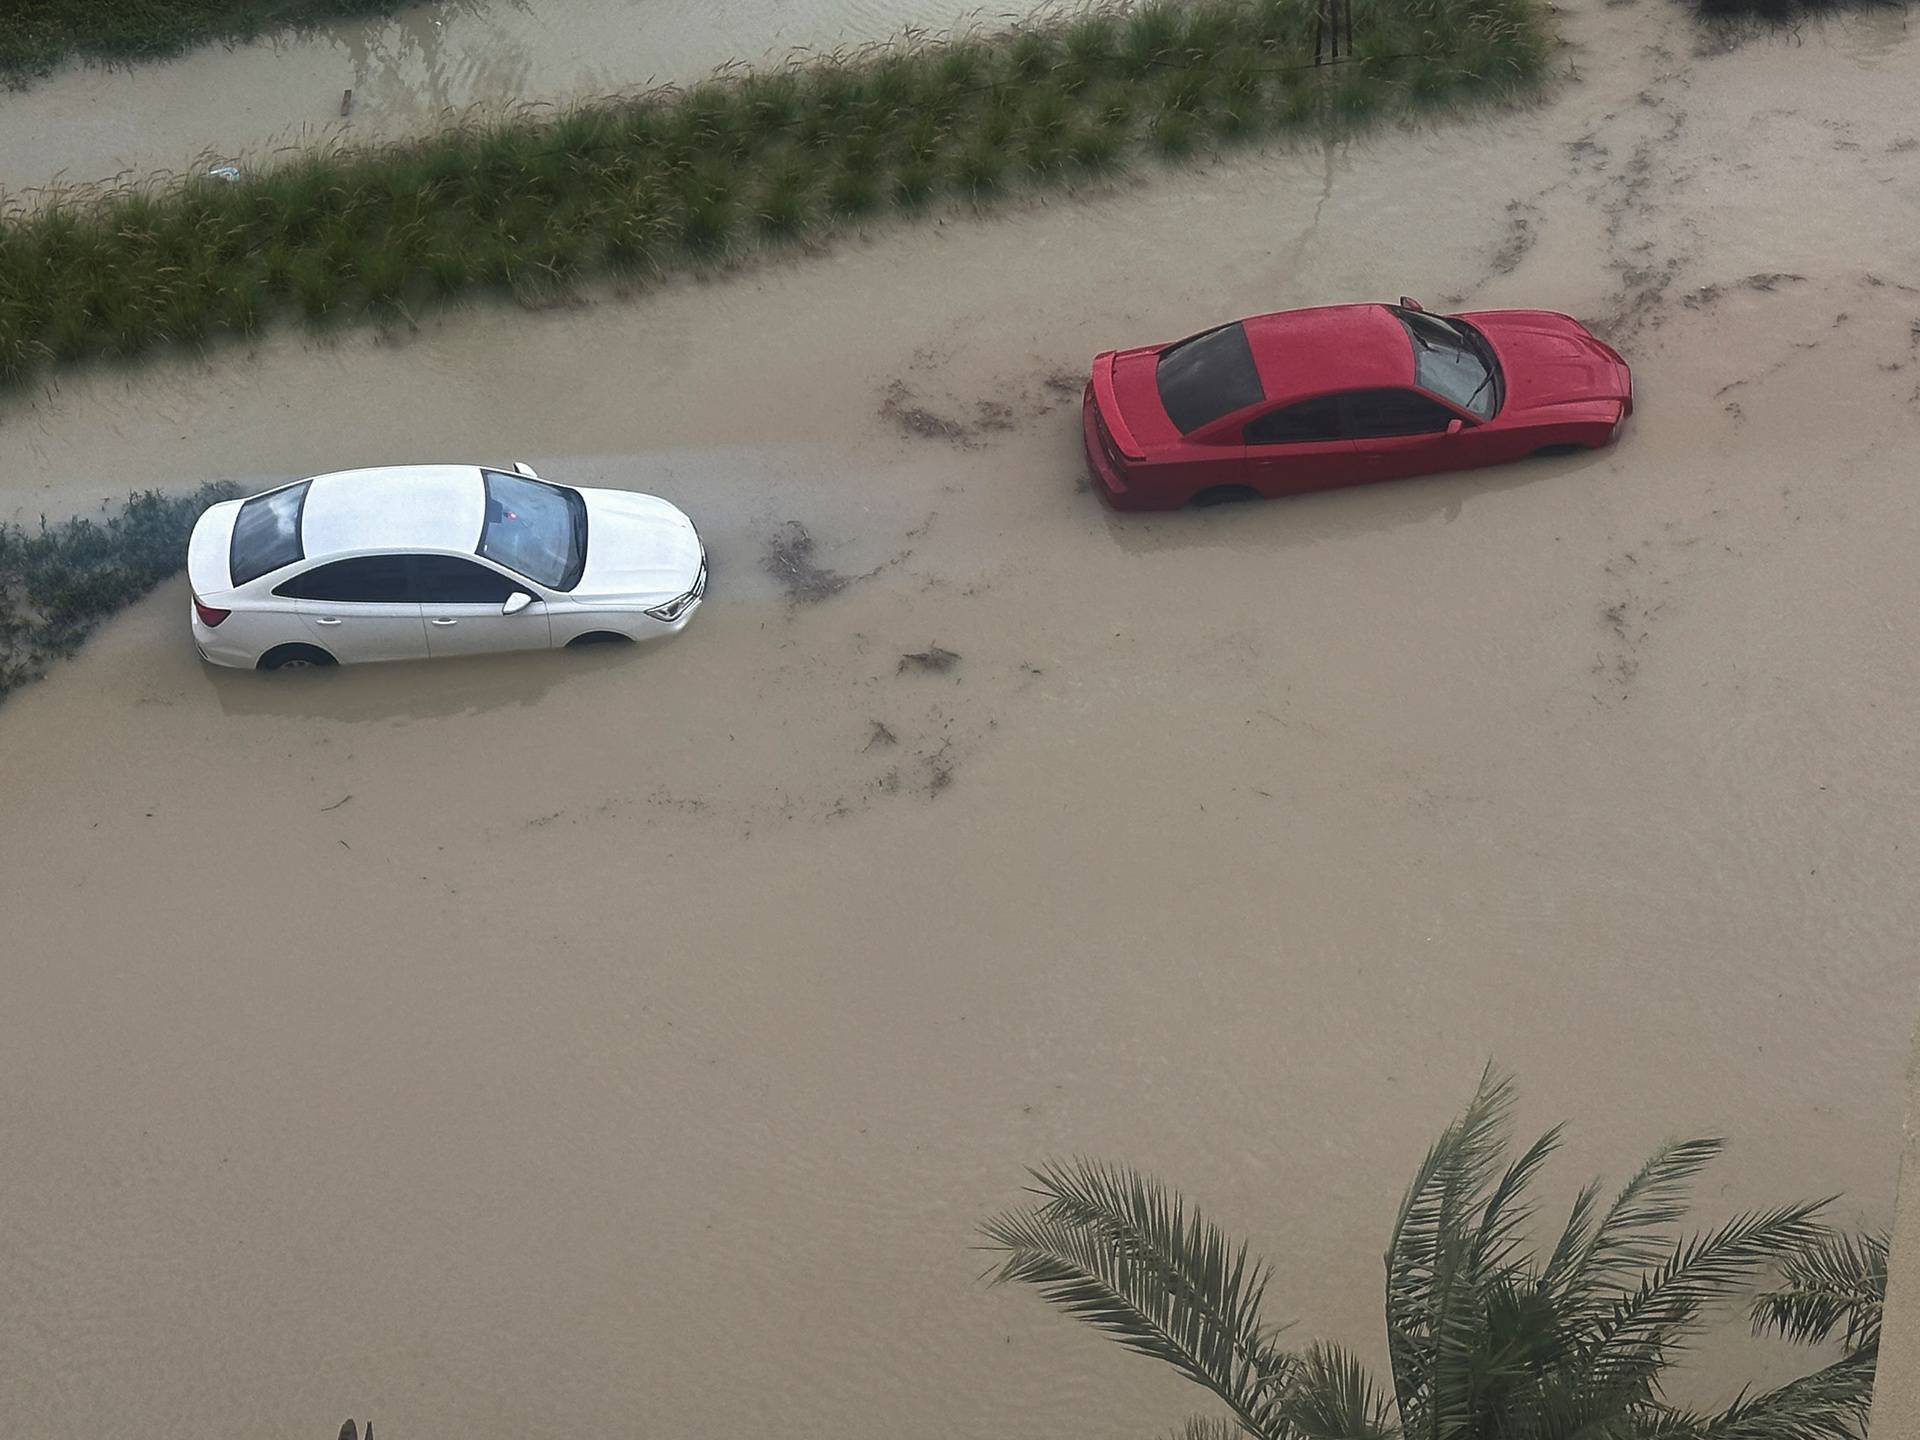 Heavy rains over Dubai